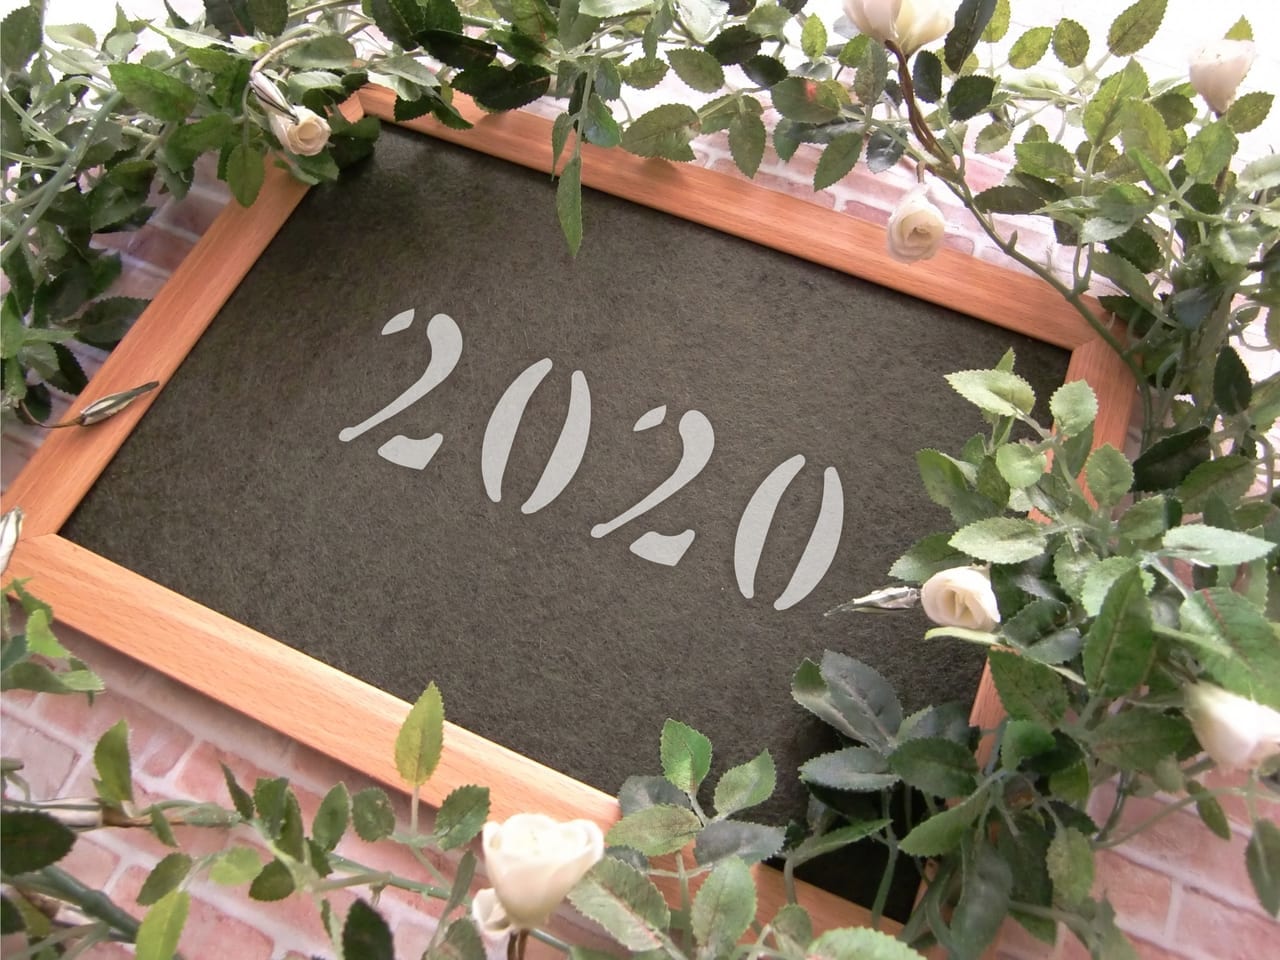 「2020」と書かれた黒板とバラの花